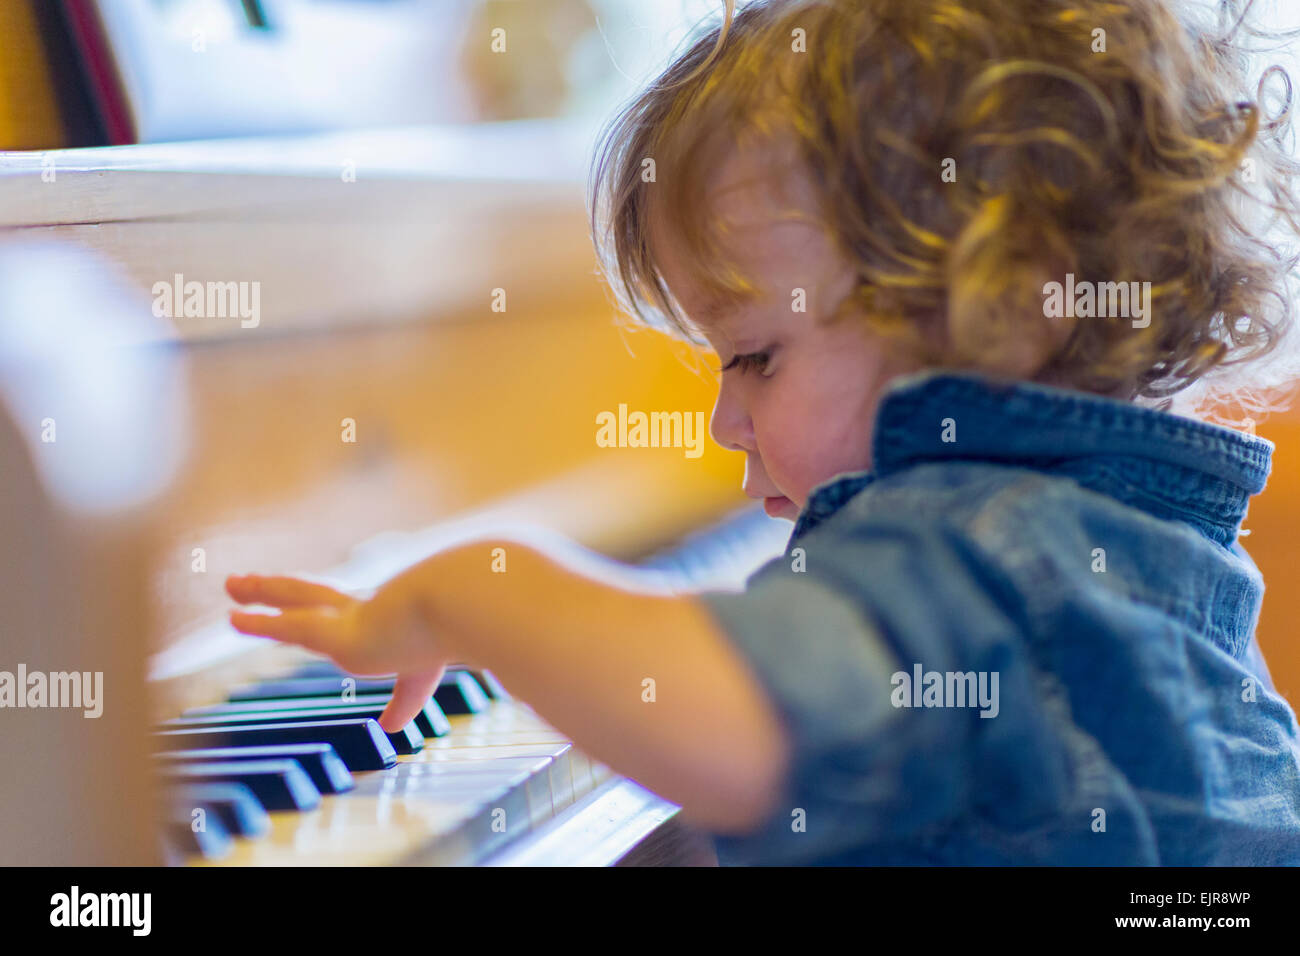 Música Do Jogo Do Bebê No Teclado De Piano Imagem de Stock - Imagem de  tecla, fofofo: 32437709